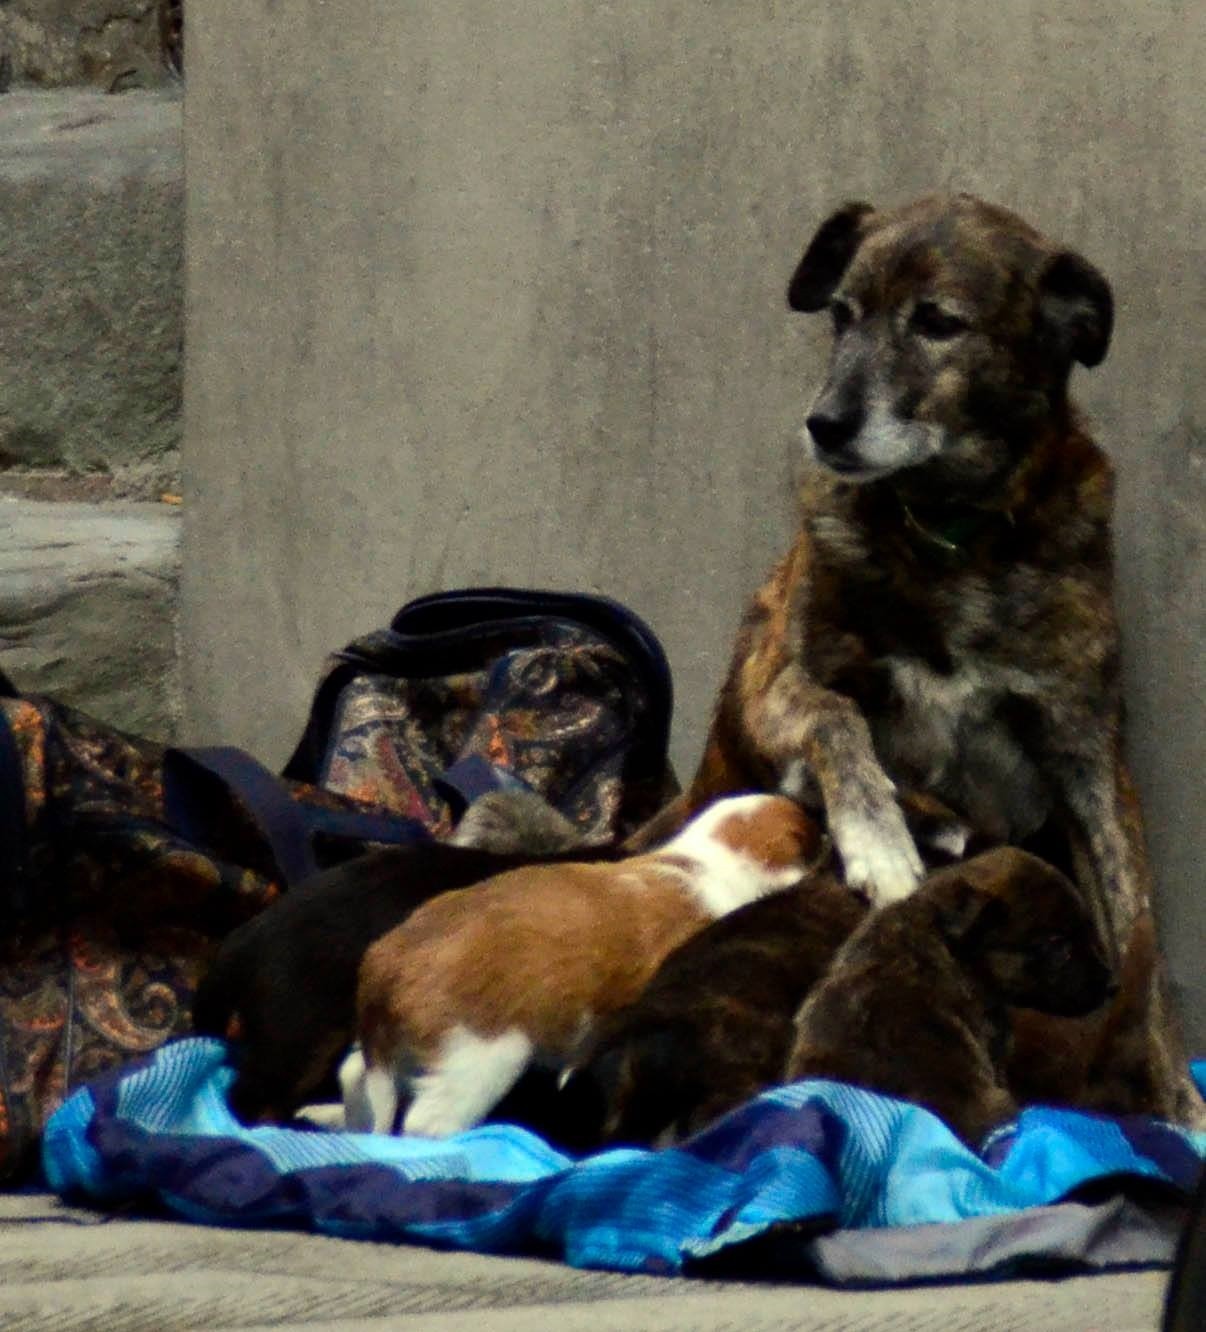 Elemosina in cambio di cuccioli. Cani venduti per 2 euro, appello Enpa per ritrovarli